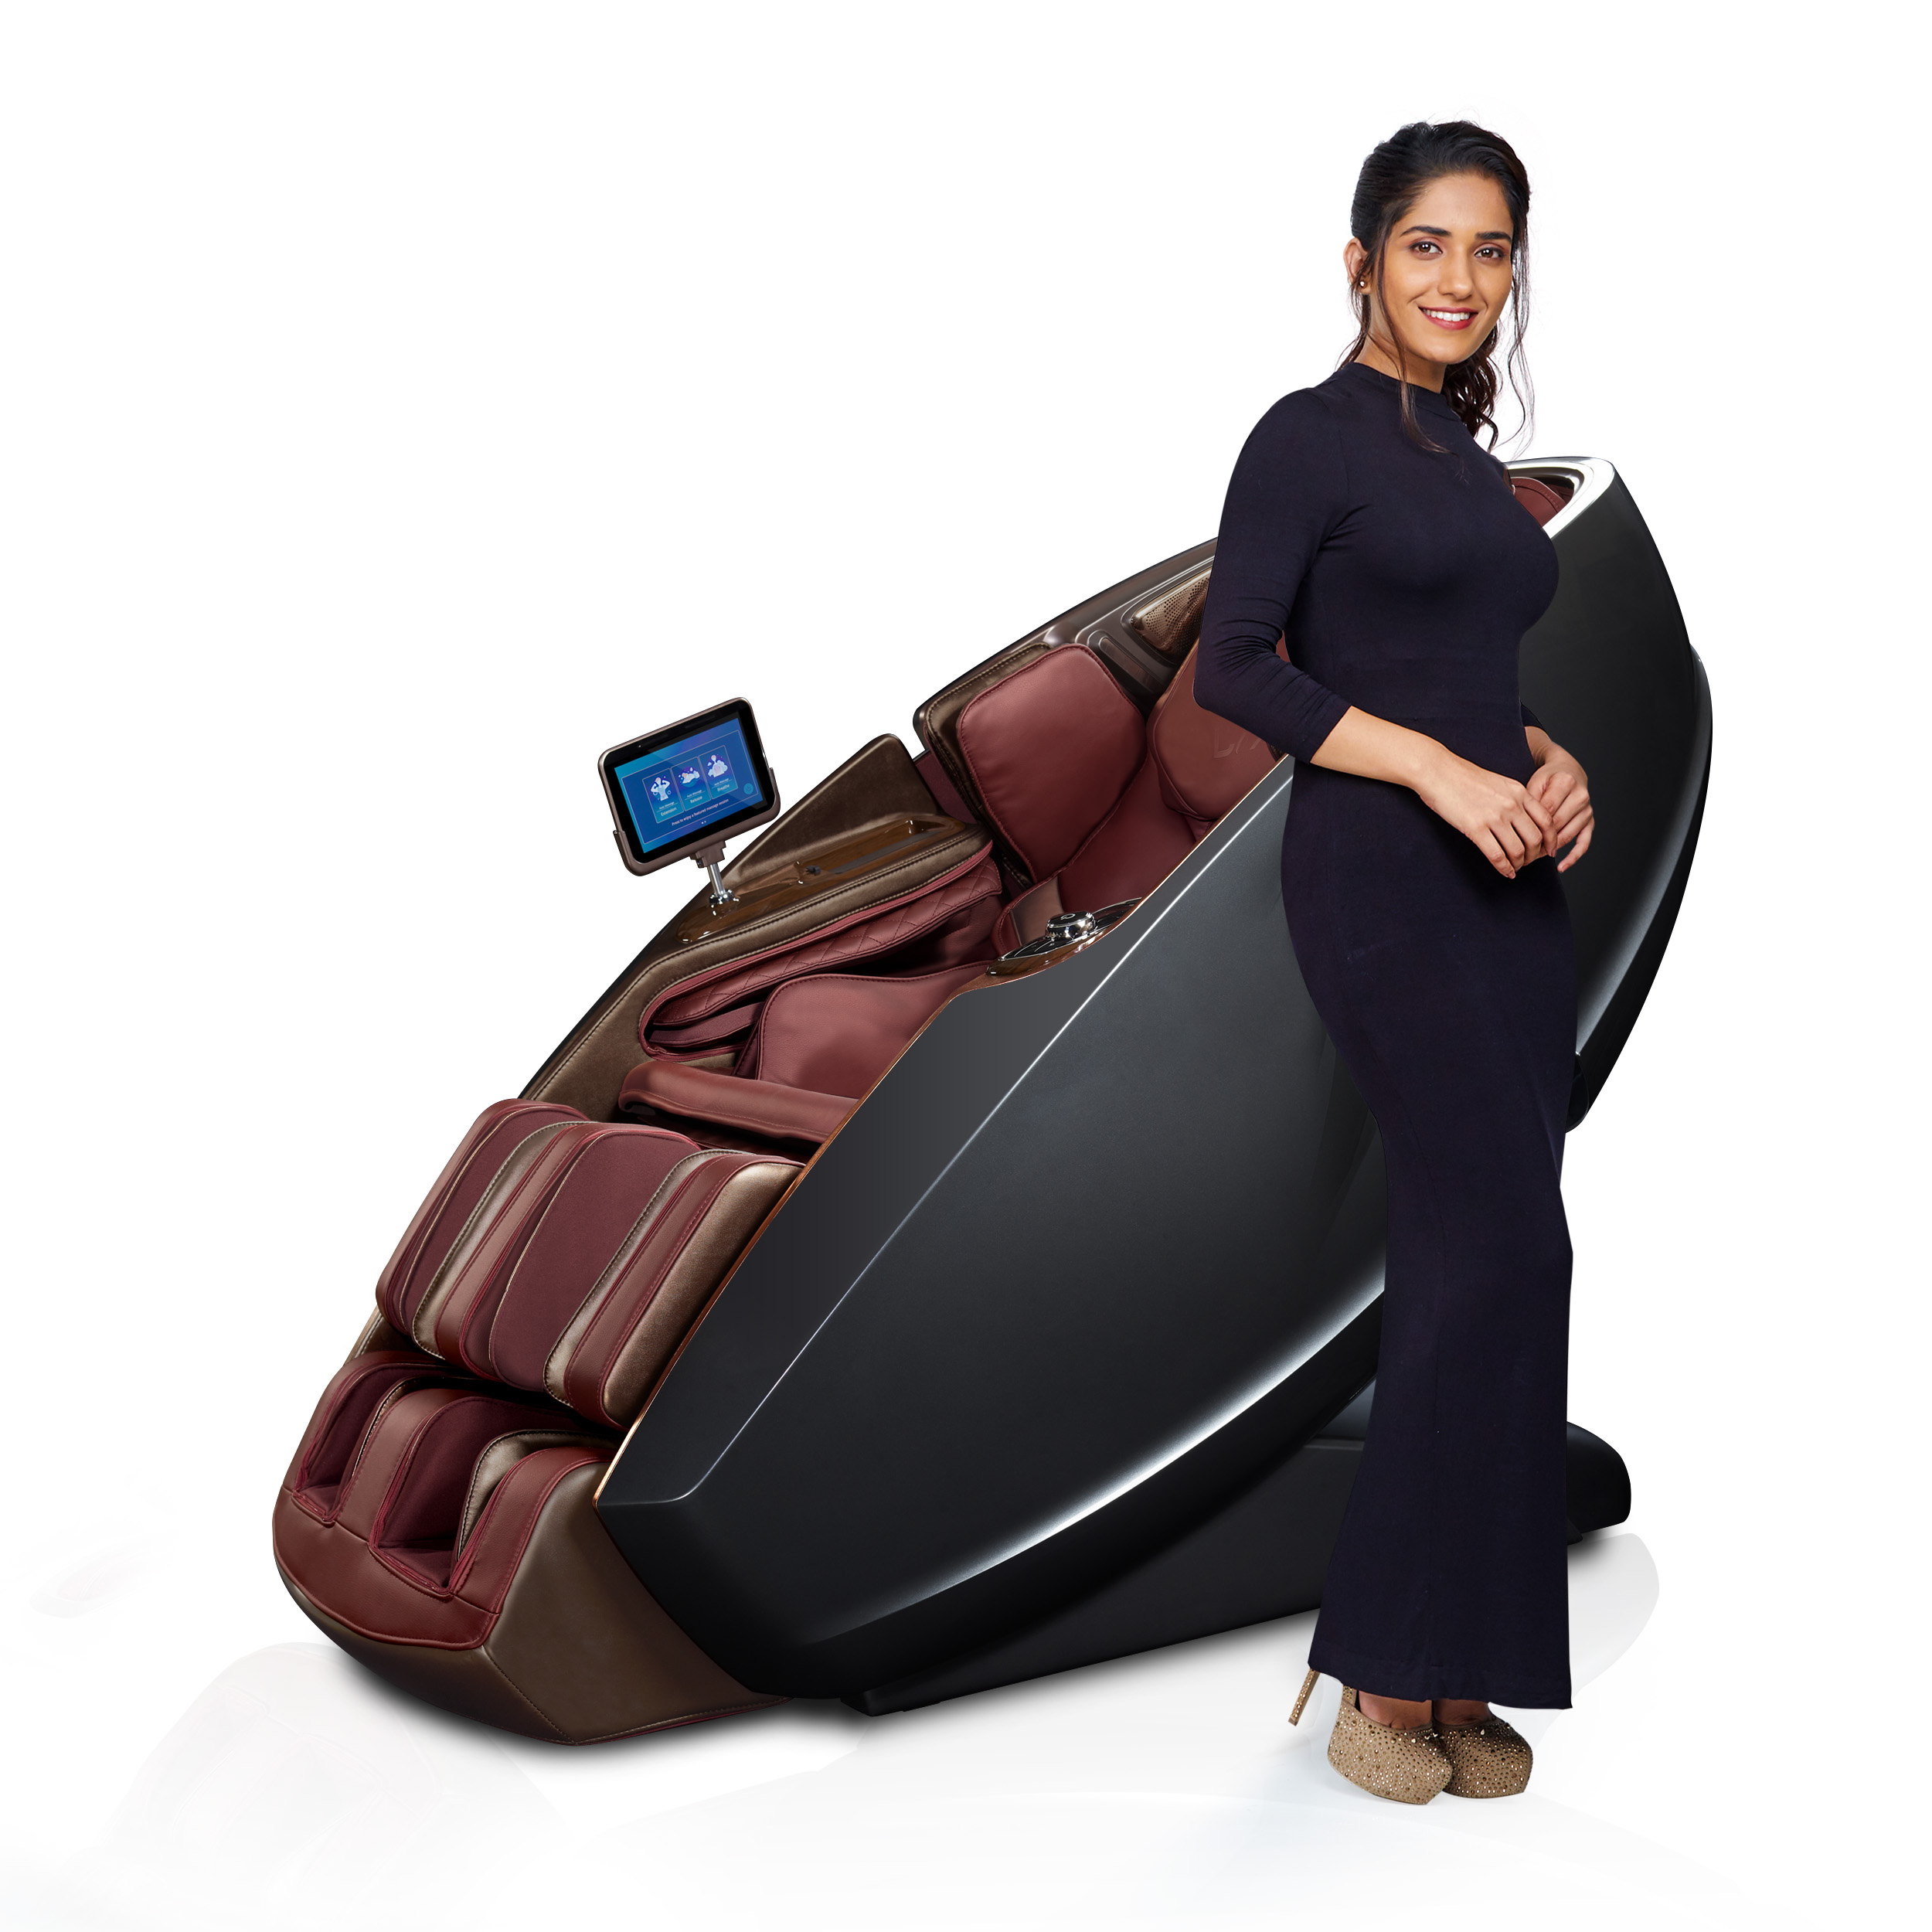 Massage Chair Online India